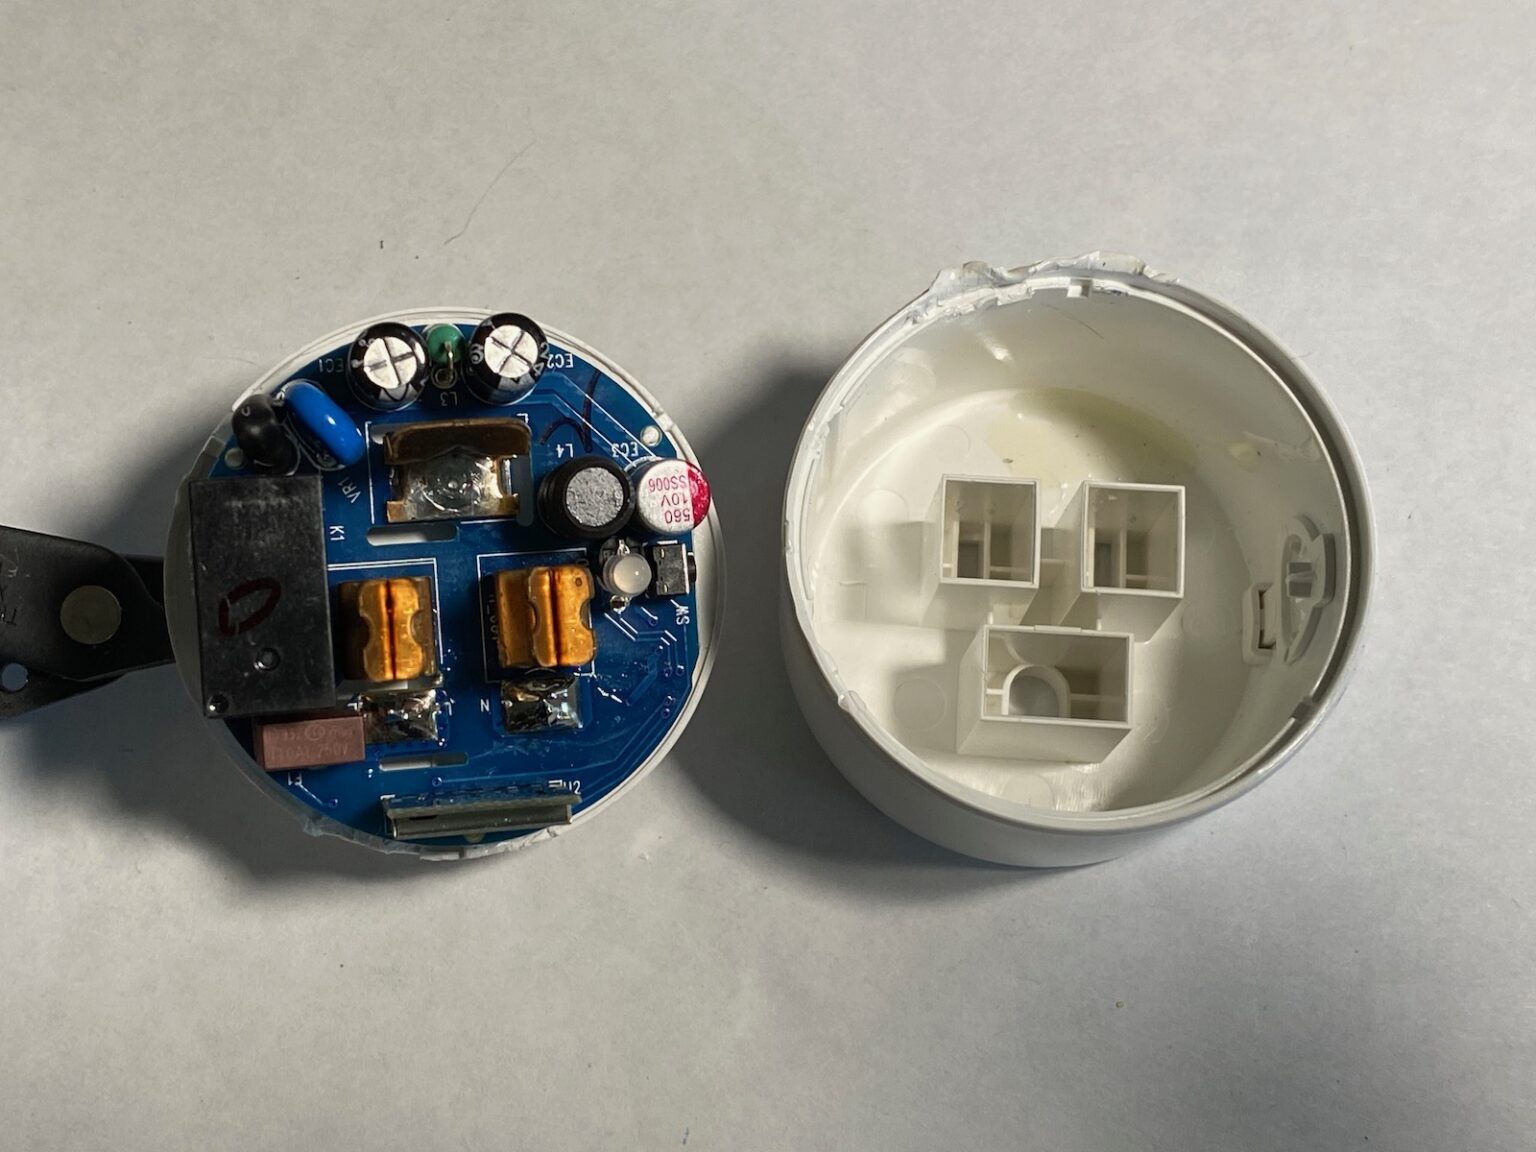 gosund smart plug not turning off